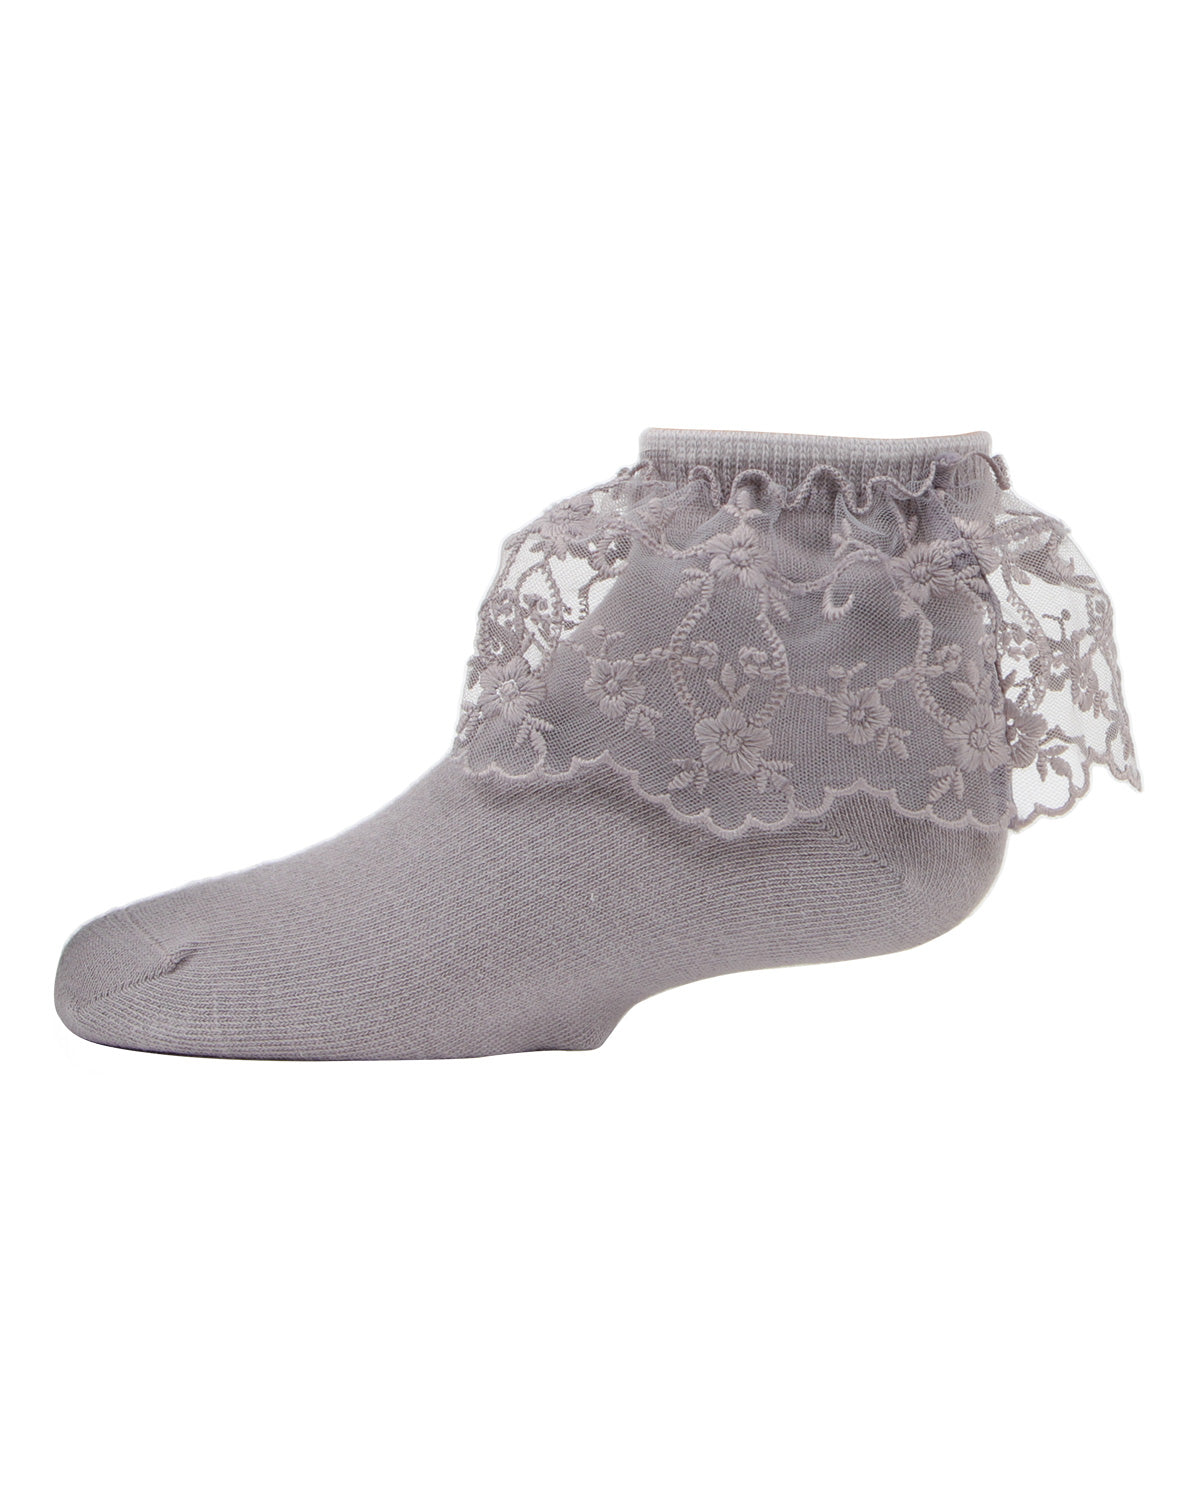 Petite Floral Lace Cotton Blend Anklet Socks